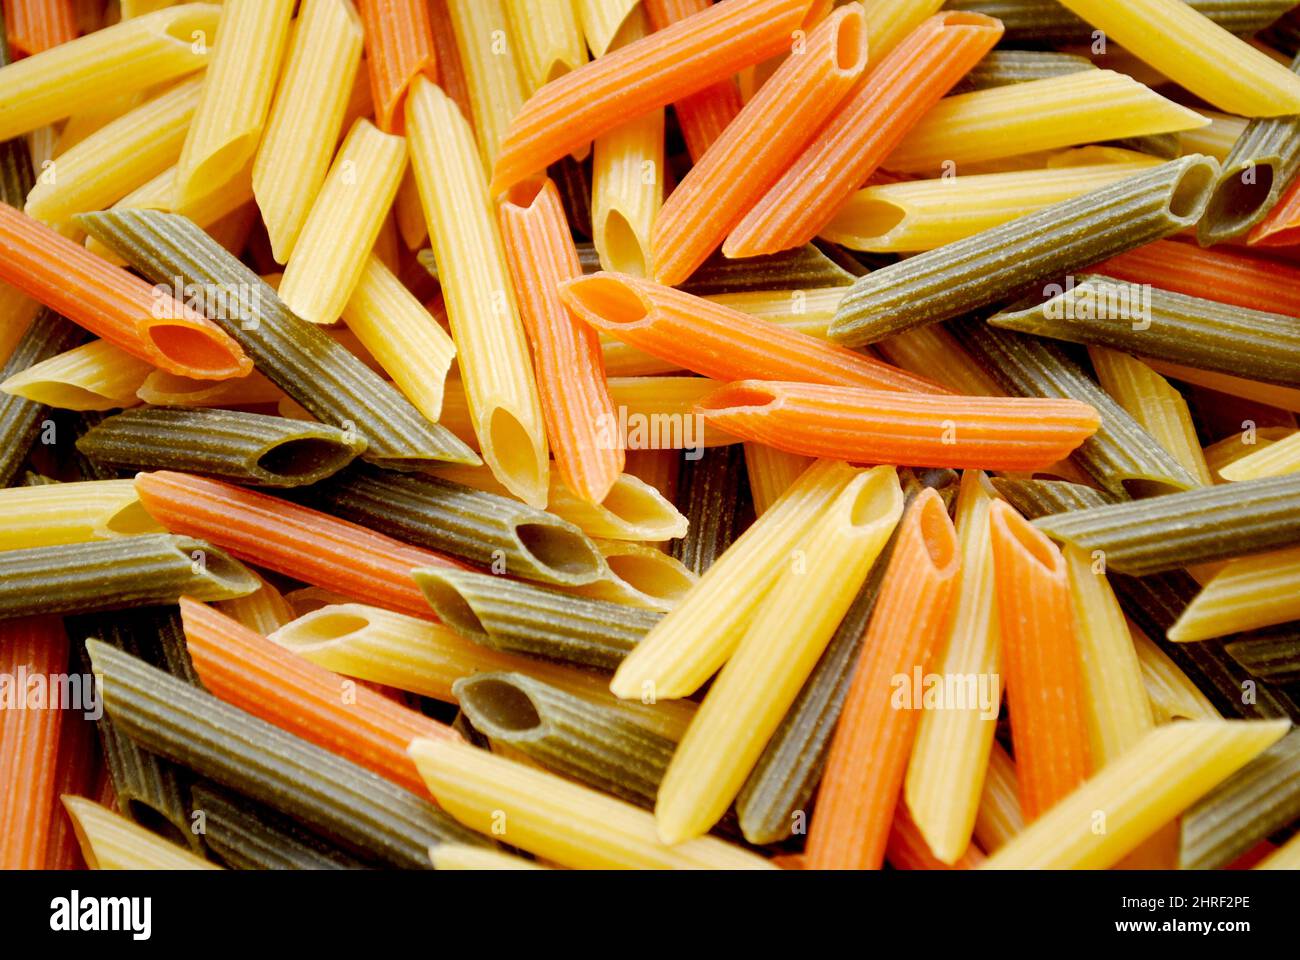 Nahaufnahme von rohen zylinderförmigen Penne Pasta Nudeln in drei Farben Gelb, Grün und Rot Stockfoto